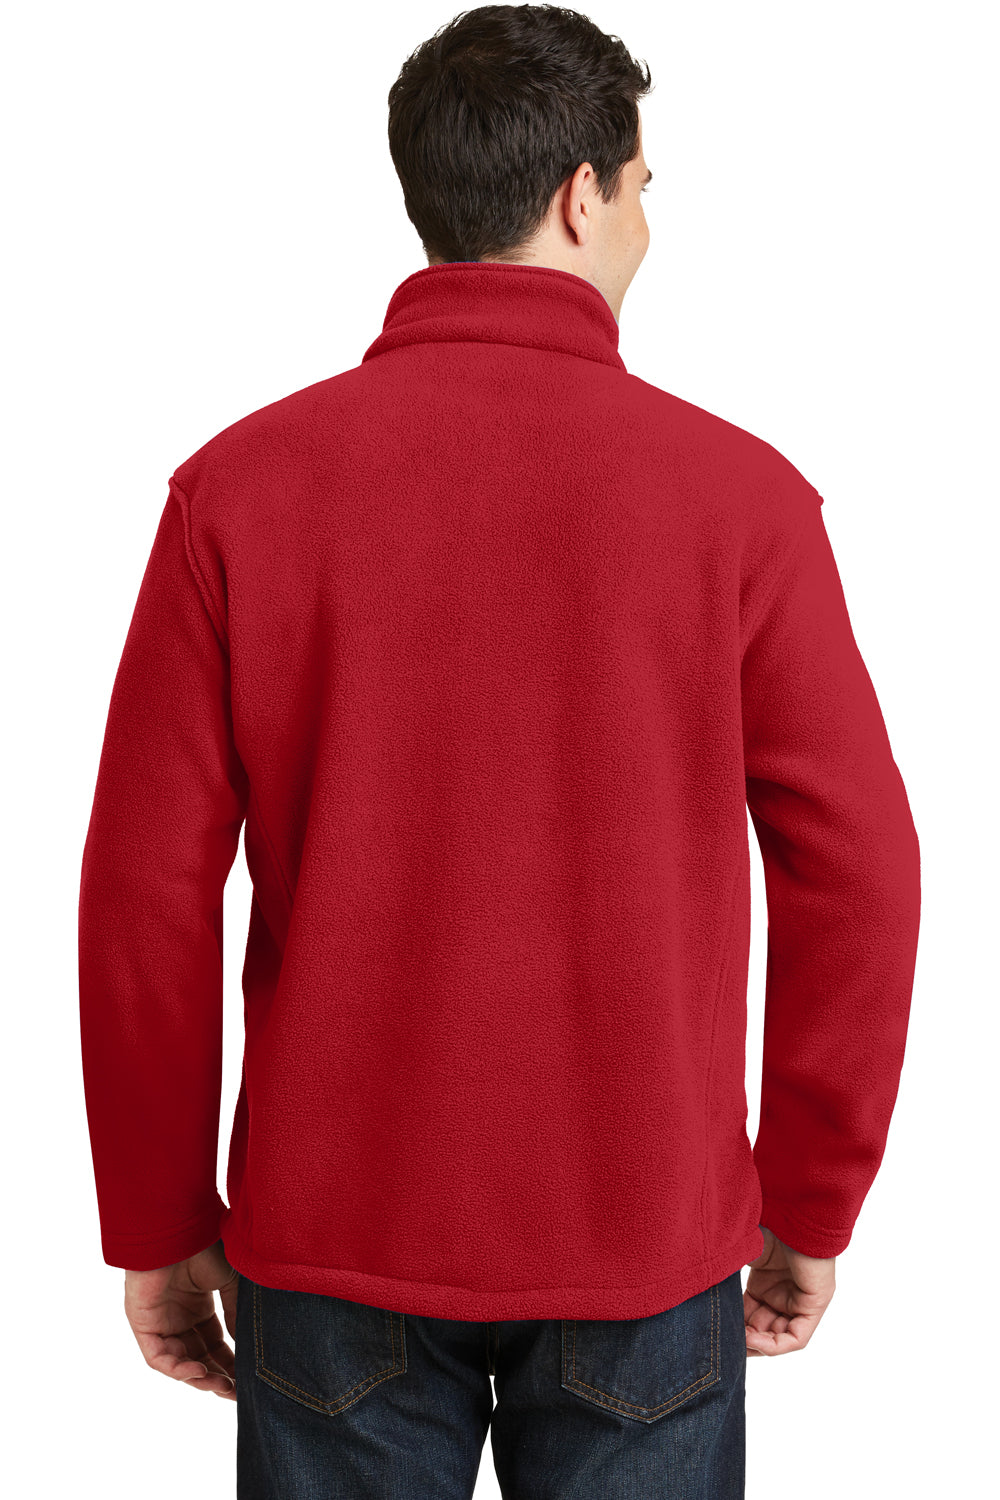 Port Authority F217 Mens Full Zip Fleece Jacket Red Back